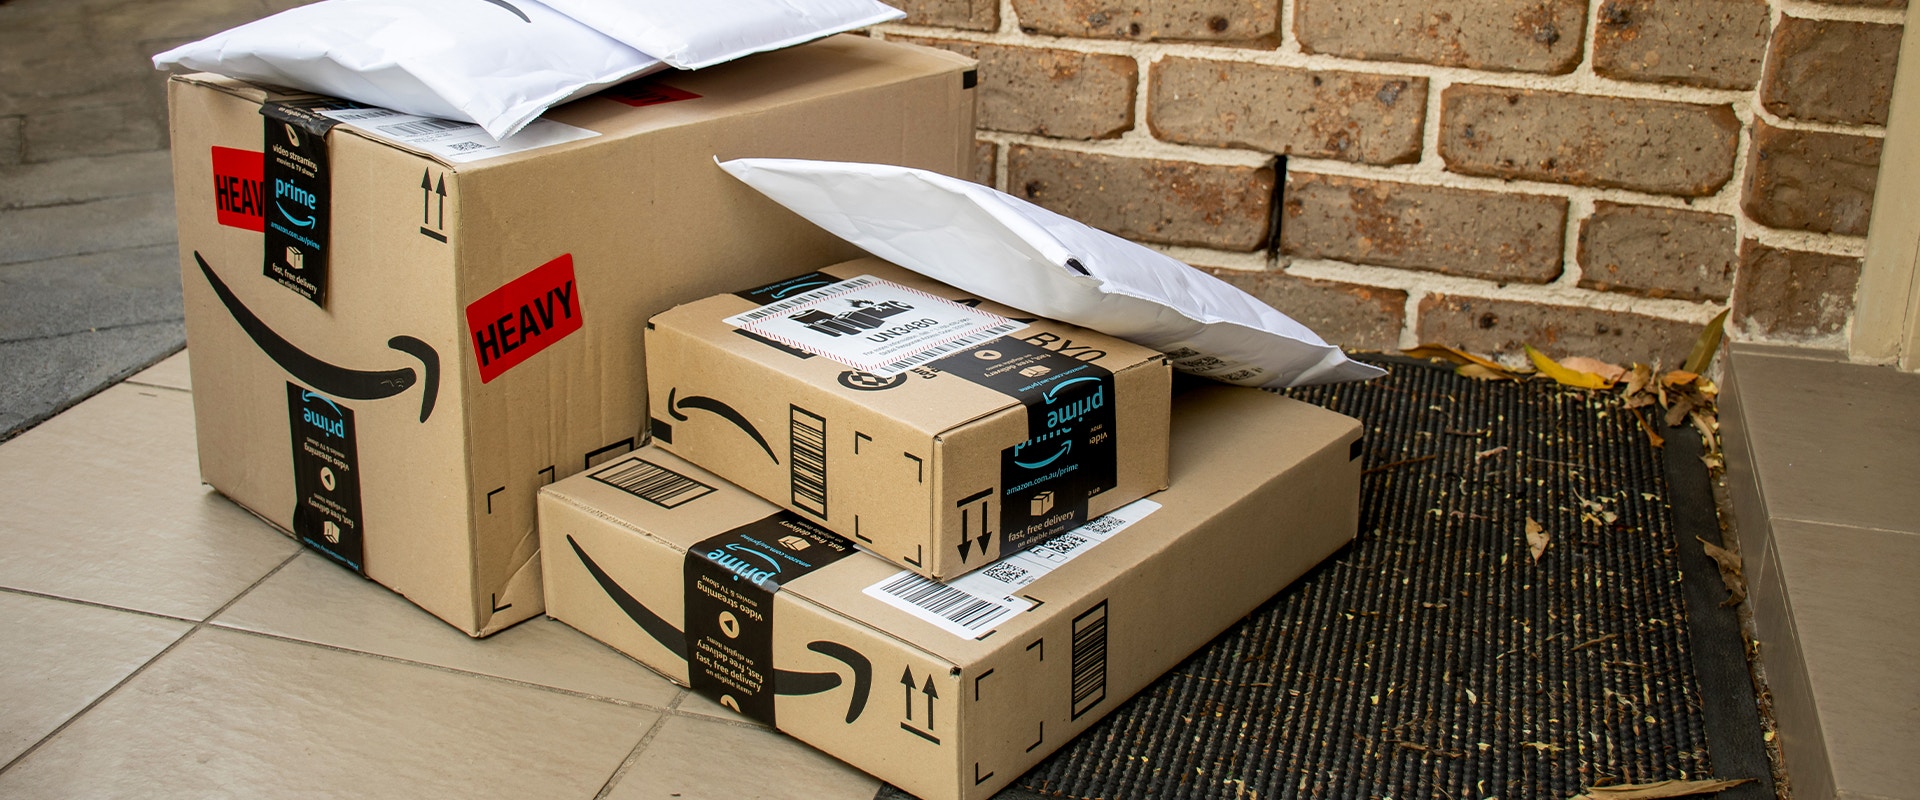 Amazon Pakete vor einer Haustür